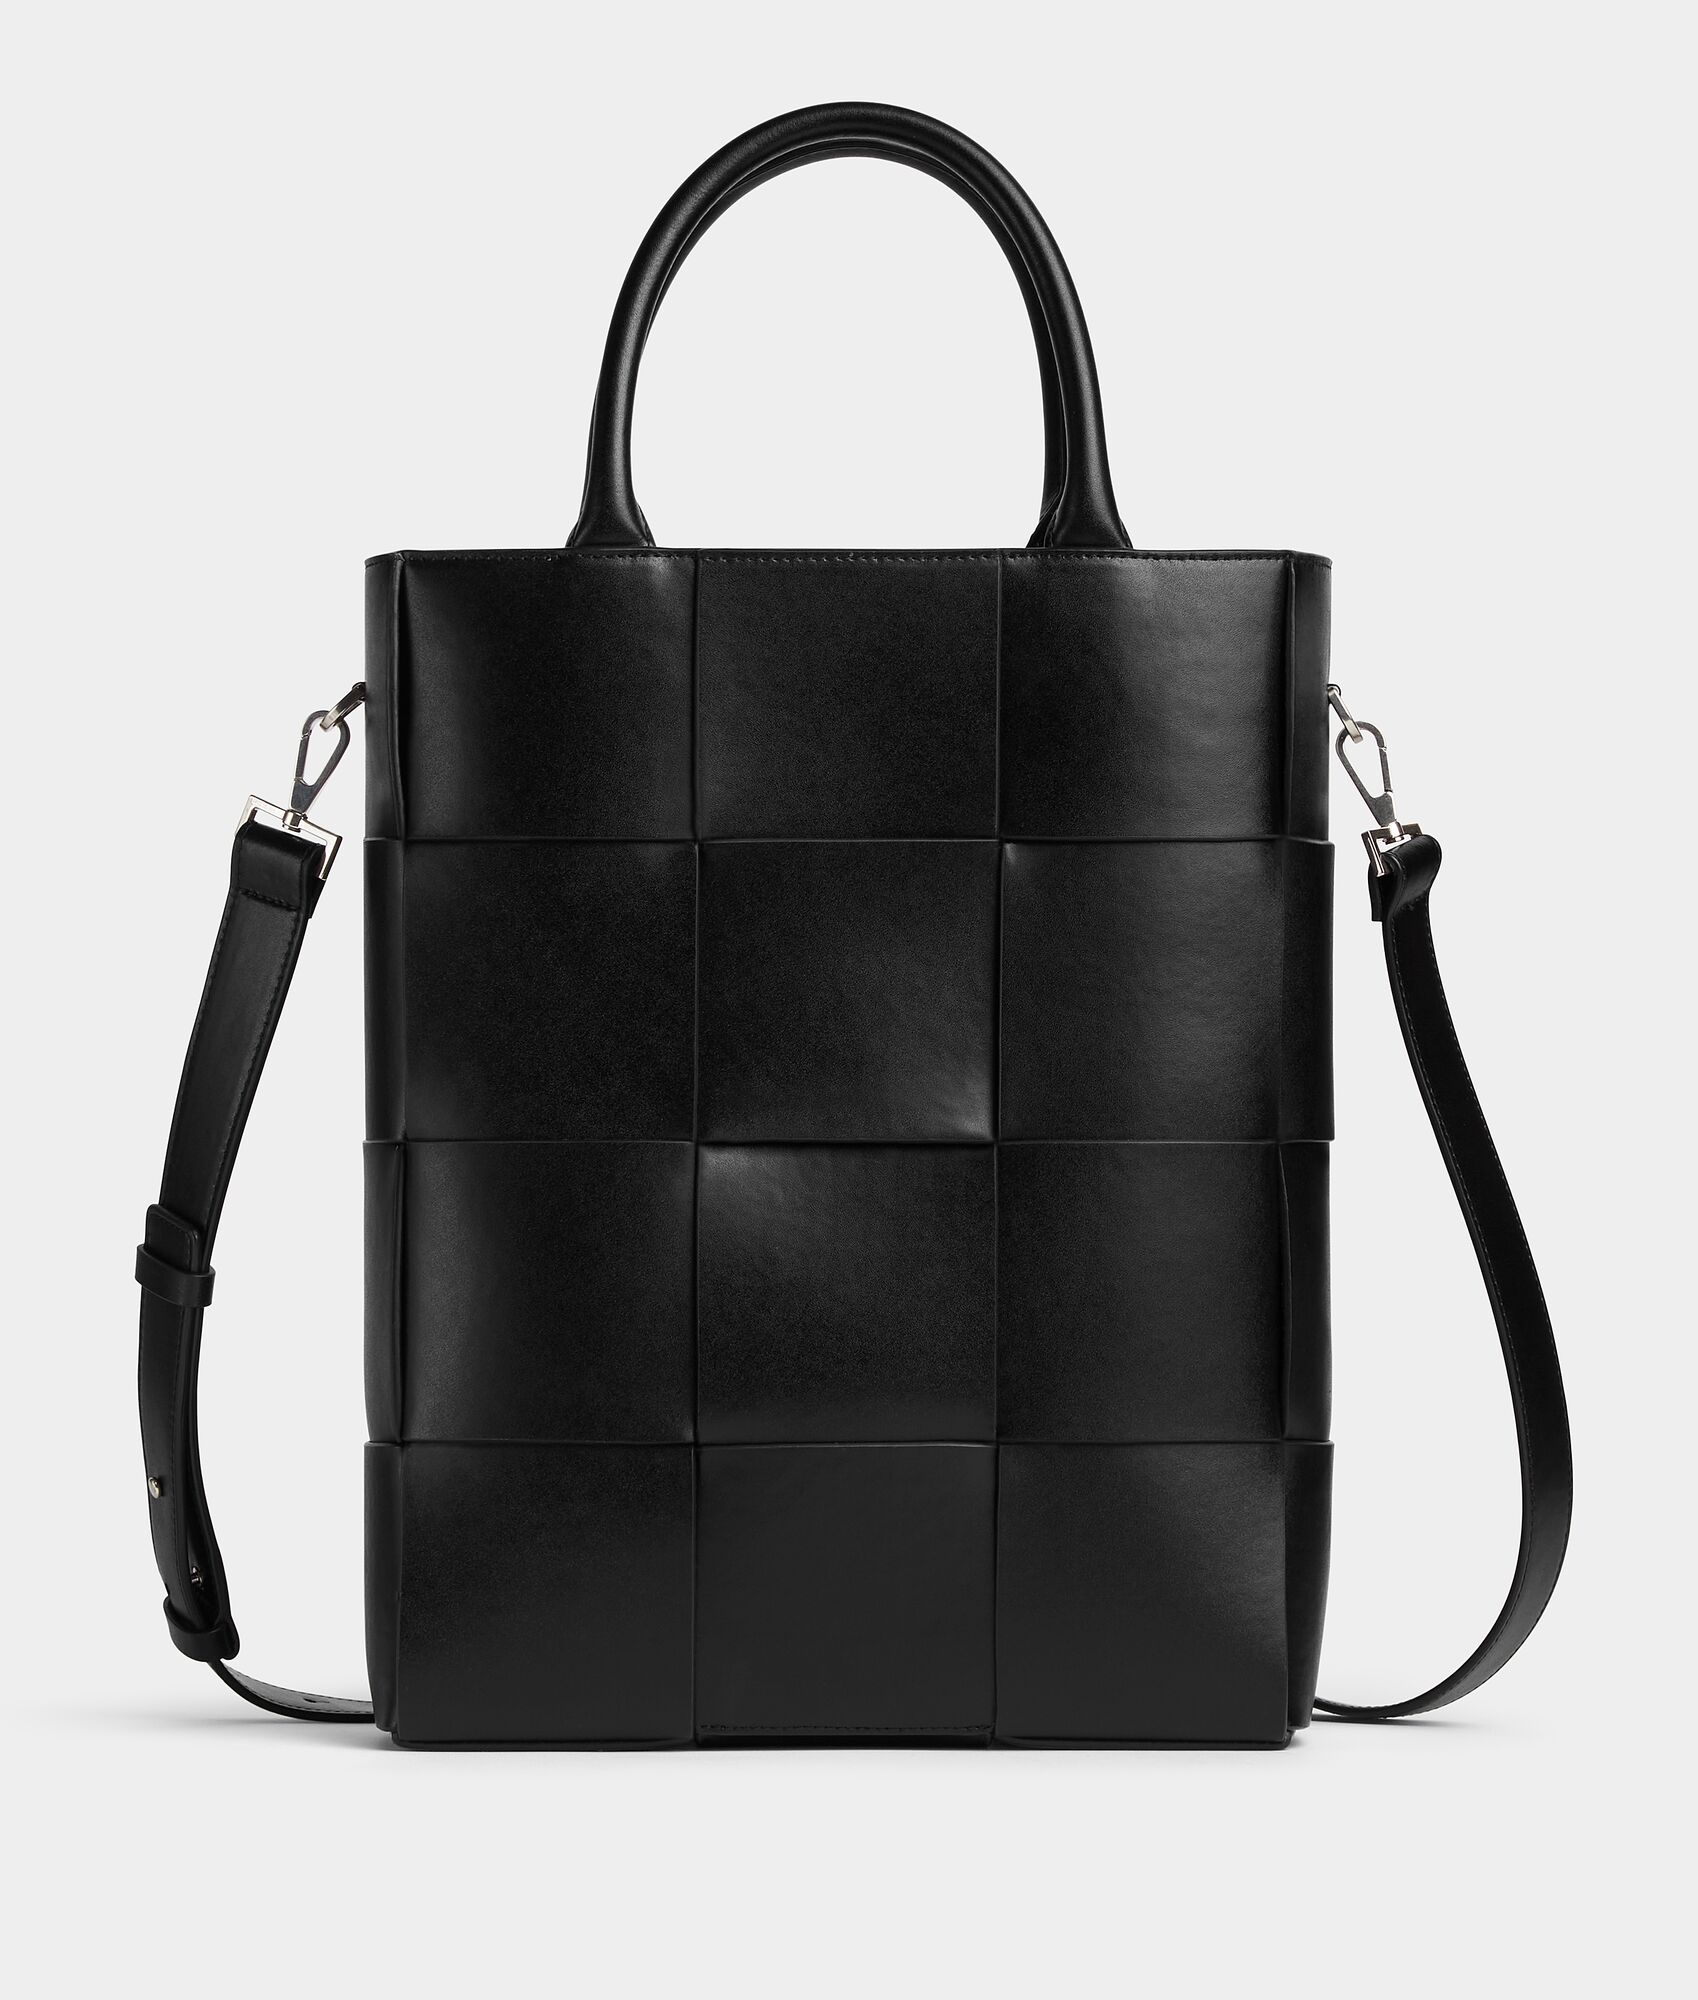 Bottega Veneta® Men's Arco Tote Bag in Black. Shop online now.